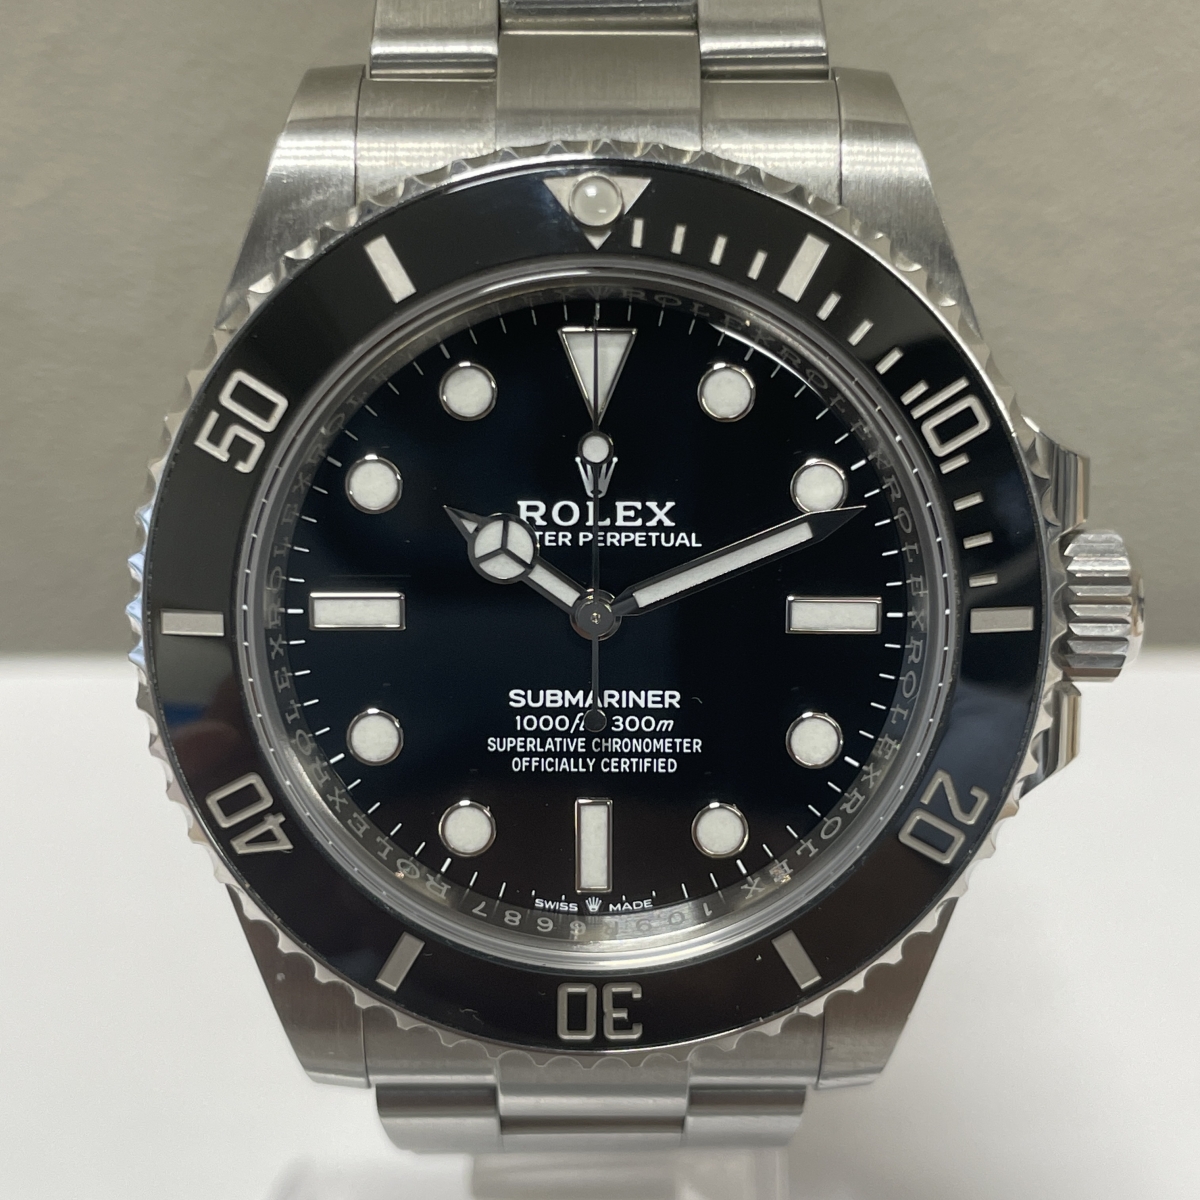 ロレックスのRef.124060 サブマリーナー ノンデイト 自動巻き腕時計 Cal.3230 黒文字盤 ランダム品番の買取実績です。